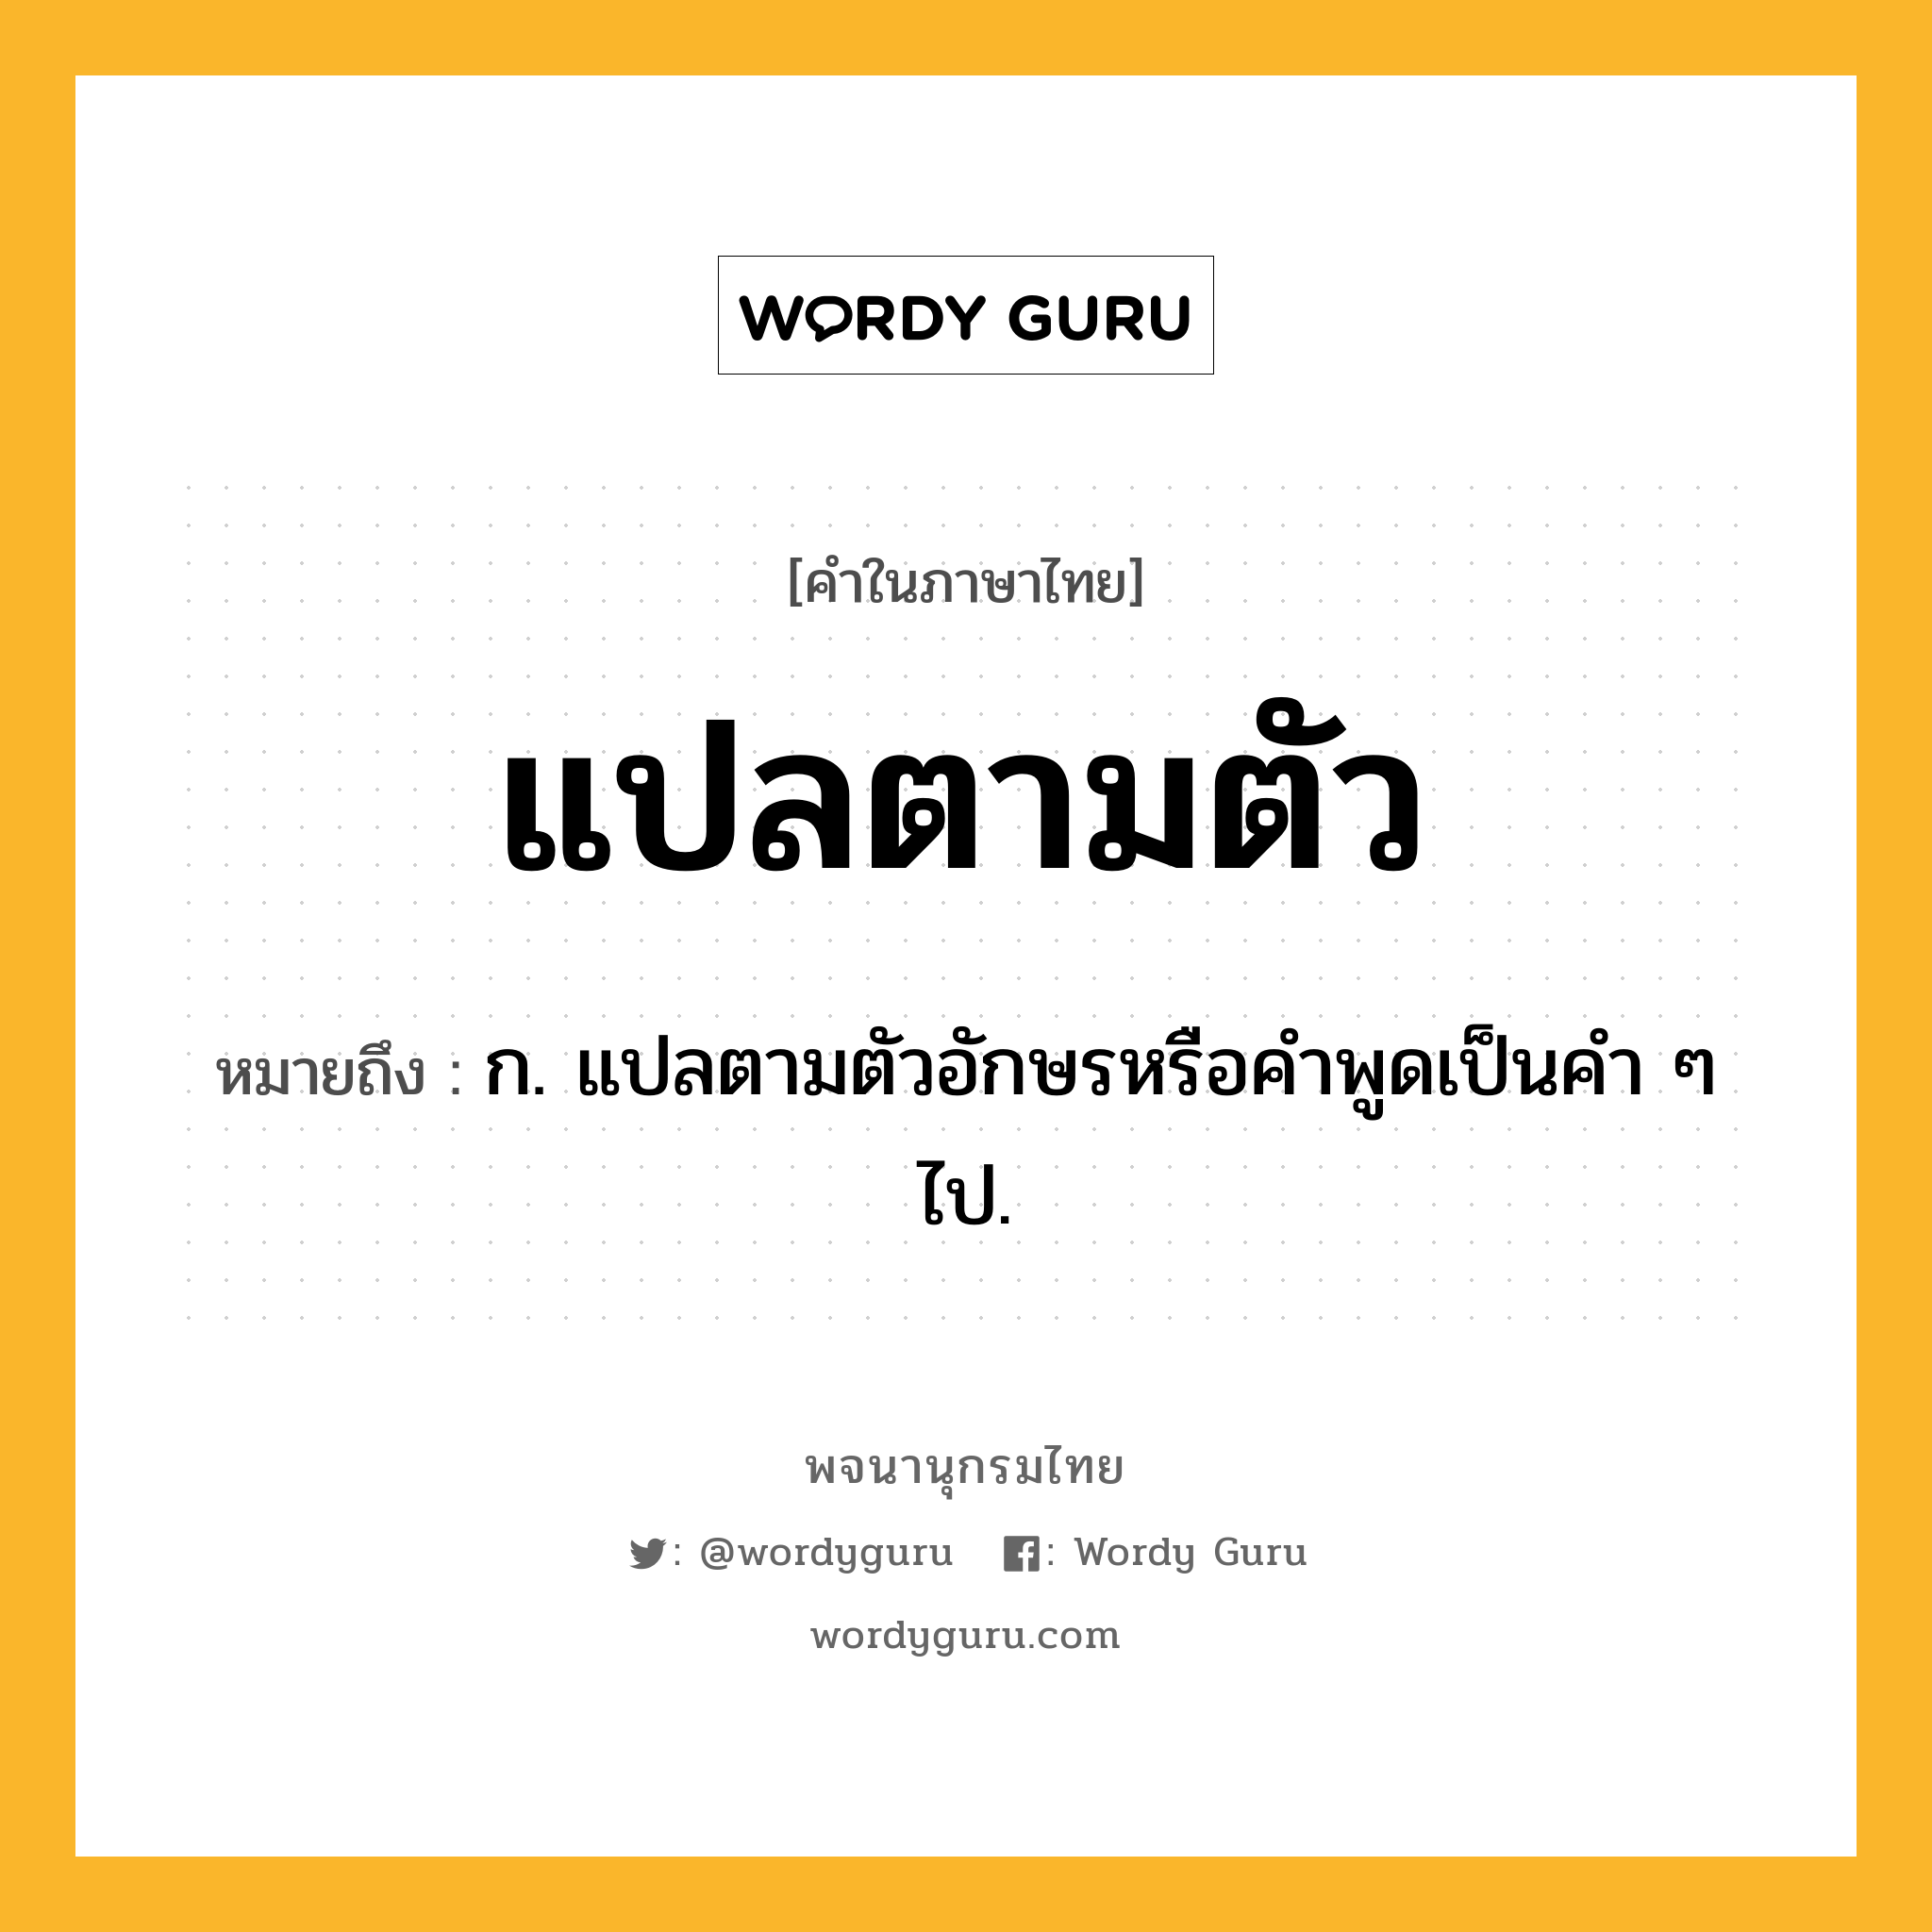 แปลตามตัว หมายถึงอะไร?, คำในภาษาไทย แปลตามตัว หมายถึง ก. แปลตามตัวอักษรหรือคำพูดเป็นคำ ๆ ไป.